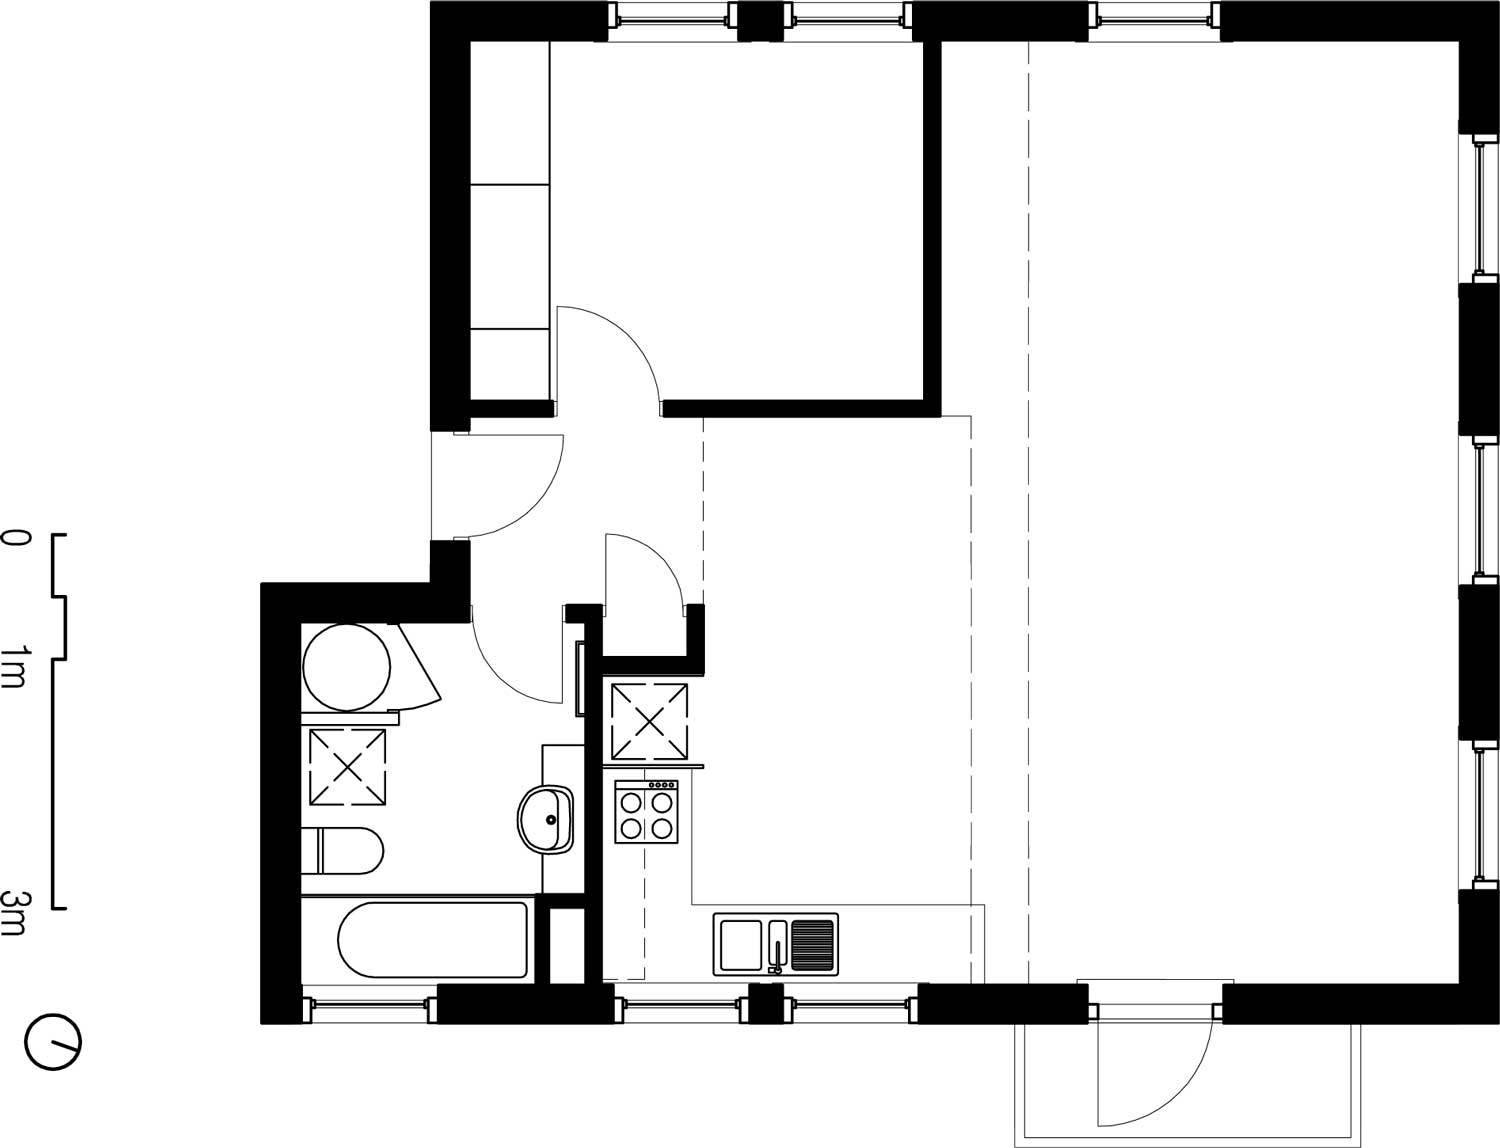 Flinders Lane Apartment / Clare Cousins Architects (1)